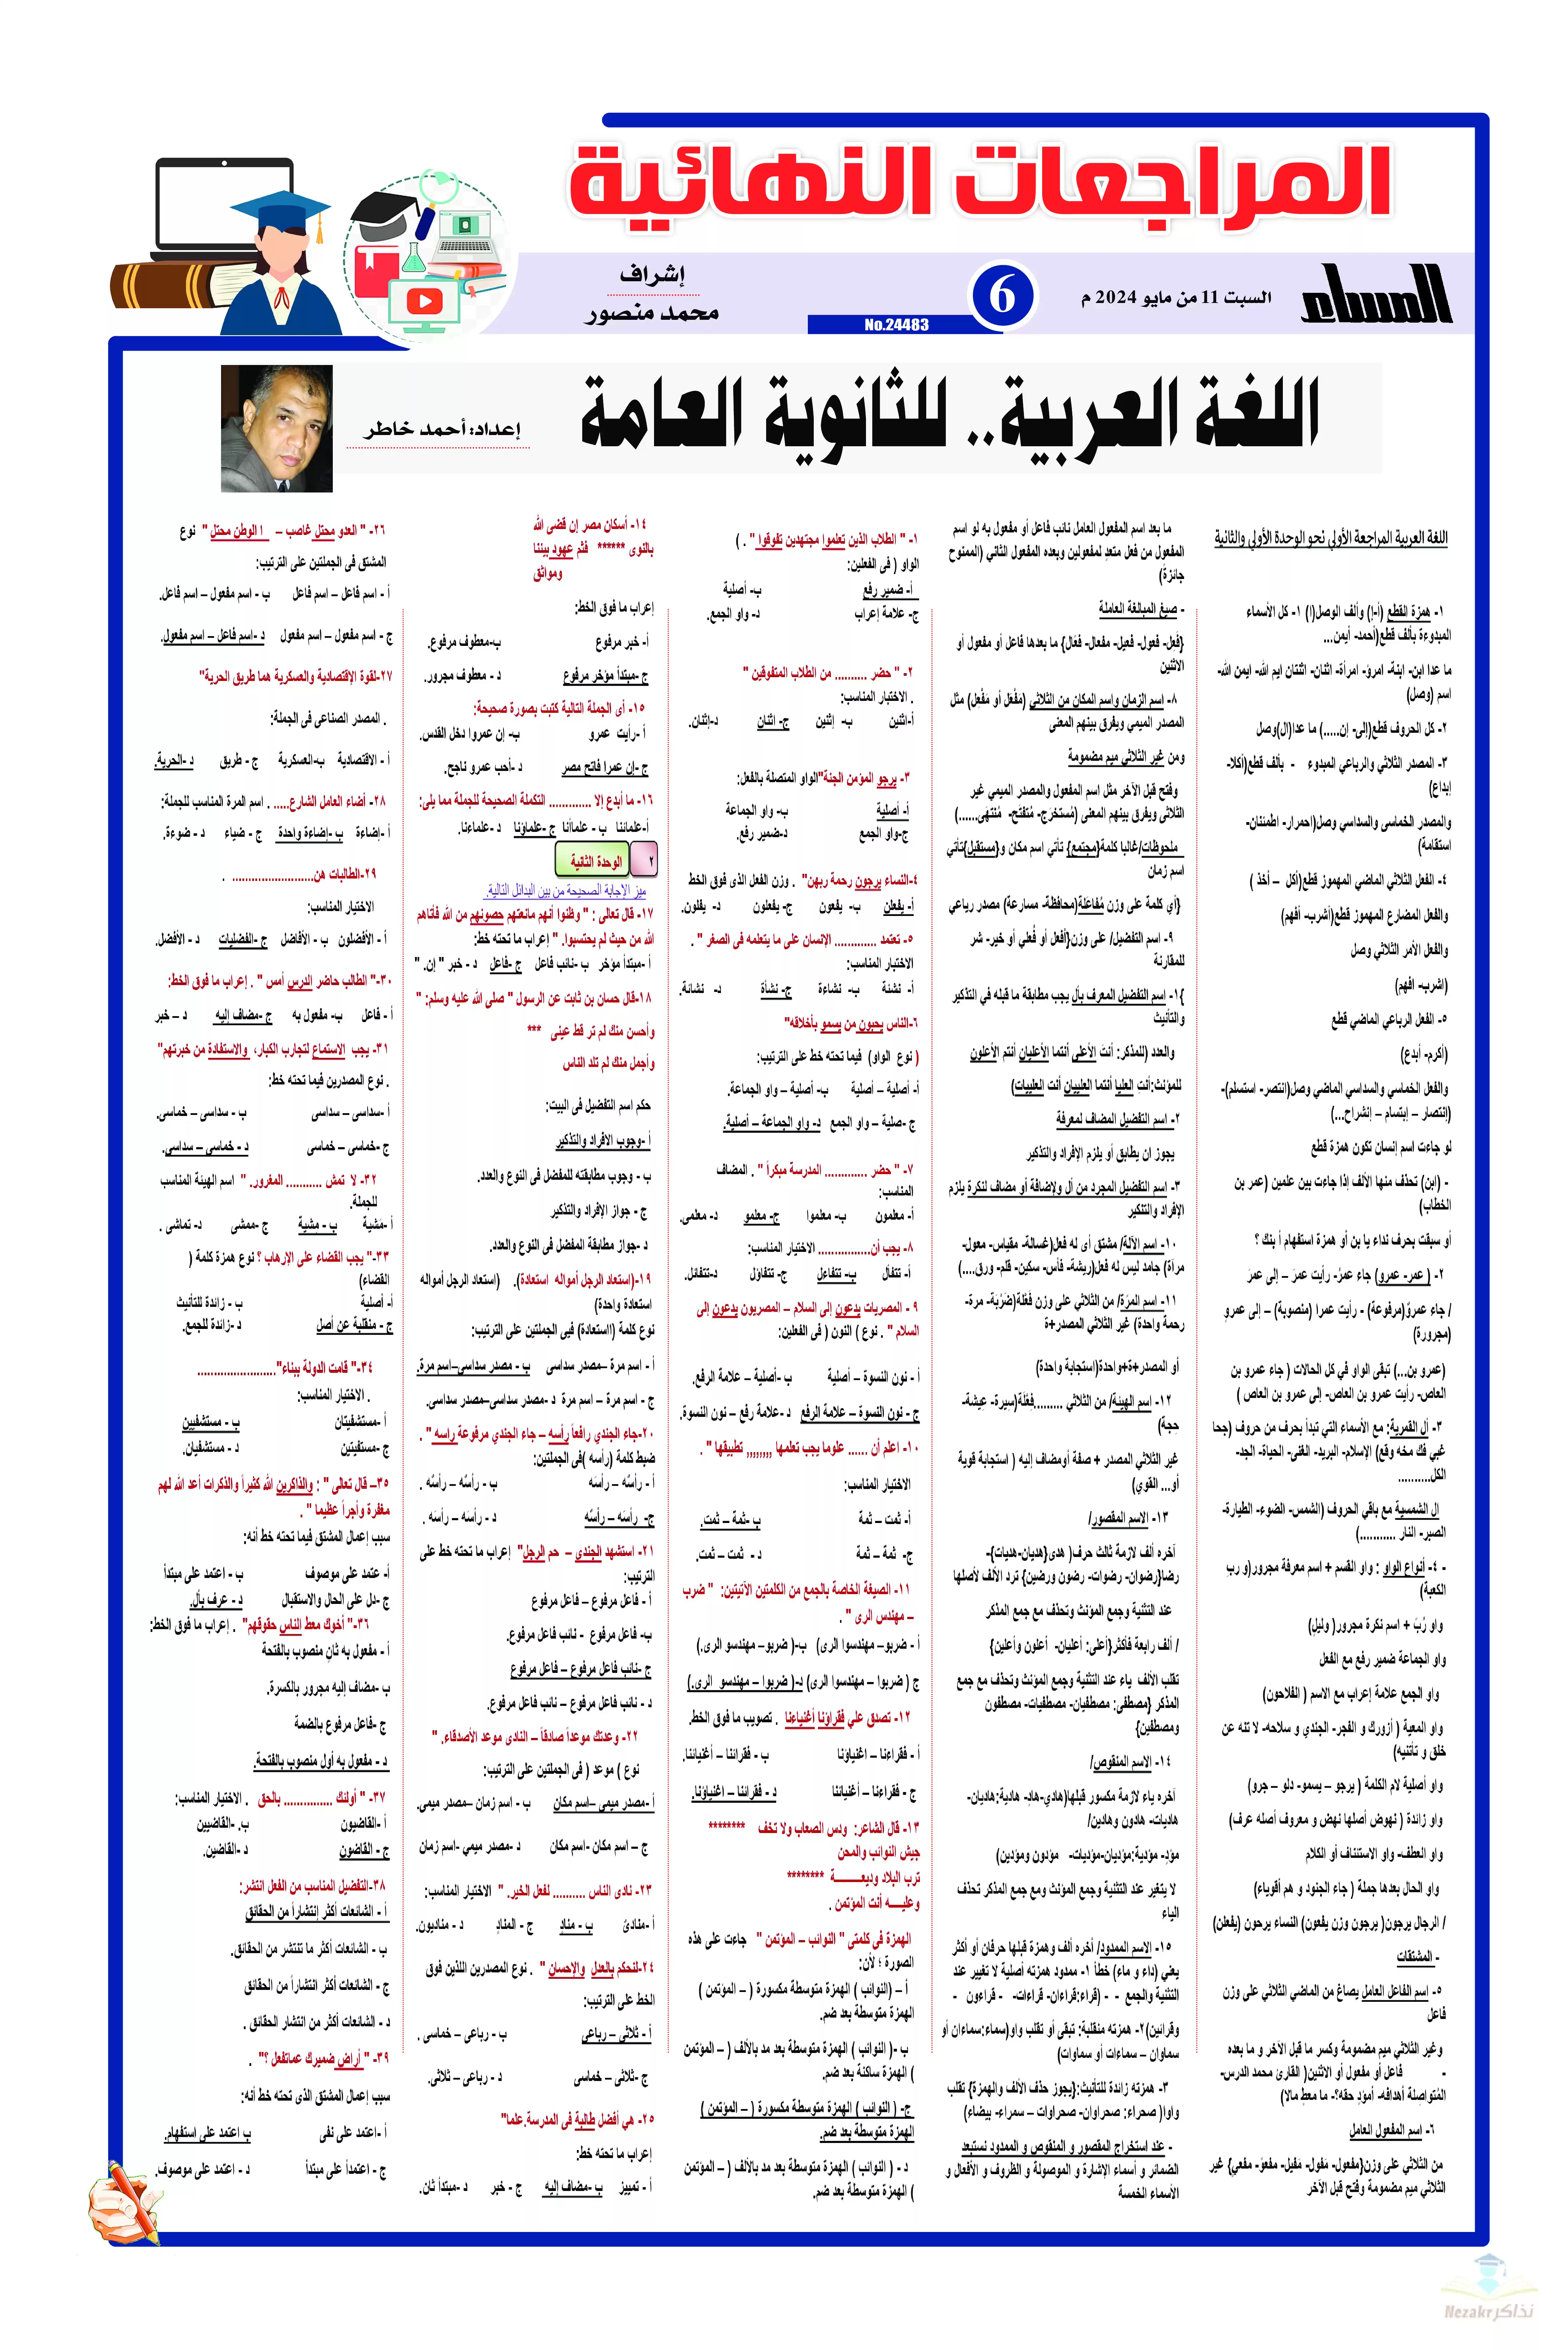 مراجعة جريدة الجمهورية النهائية في النحو (لغة عربية) للصف الثالث الثانوي